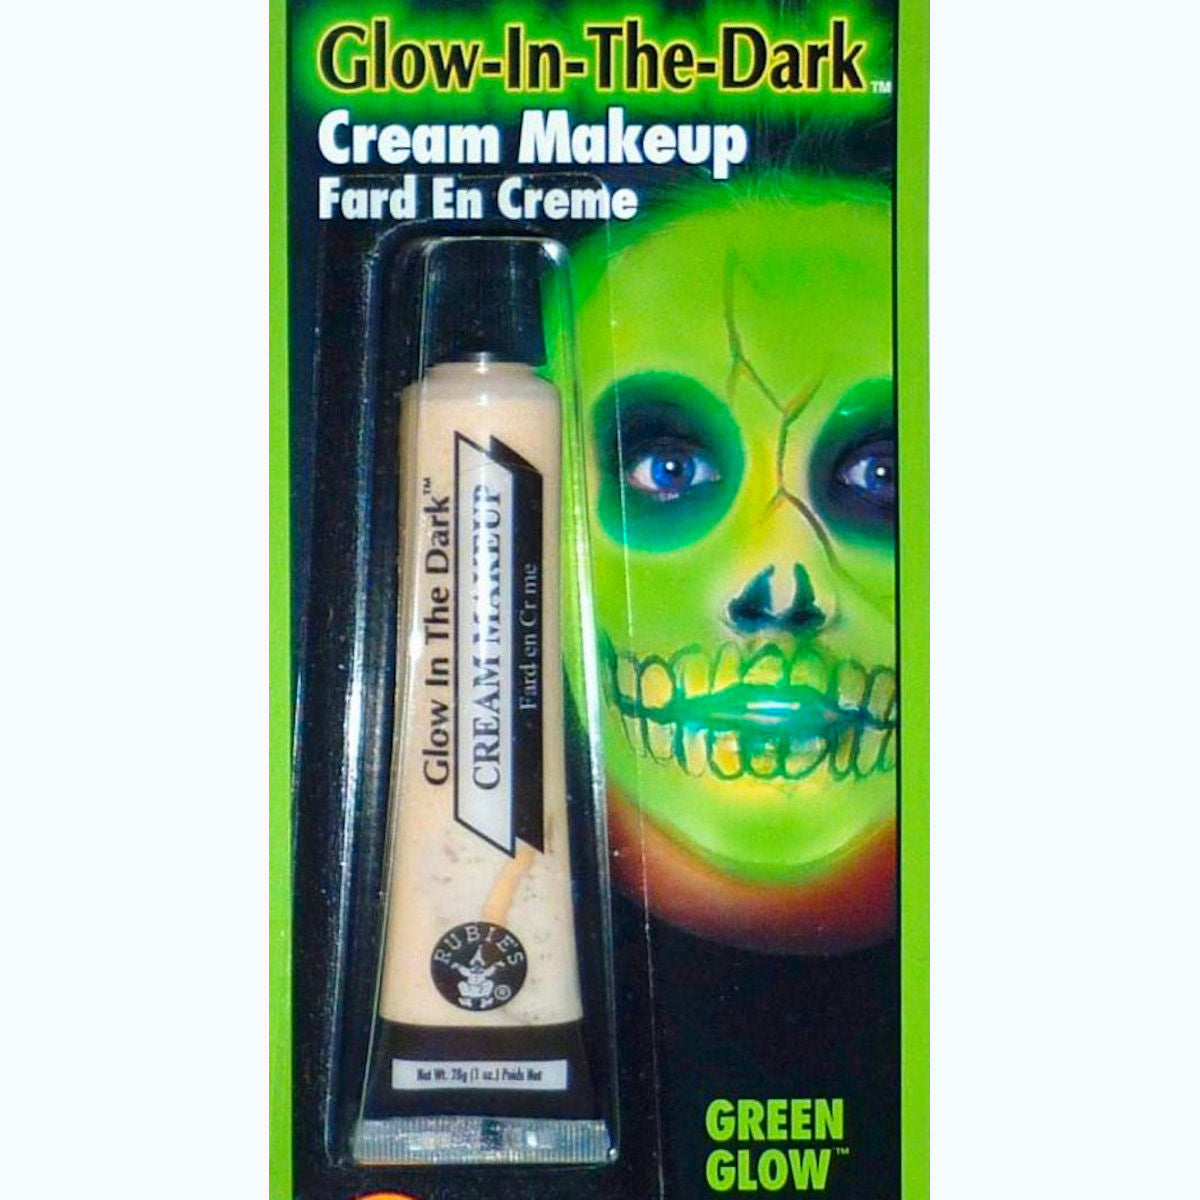 Glow in the Dark Cream GREEN GLOW Makup special effects fancy dress costume